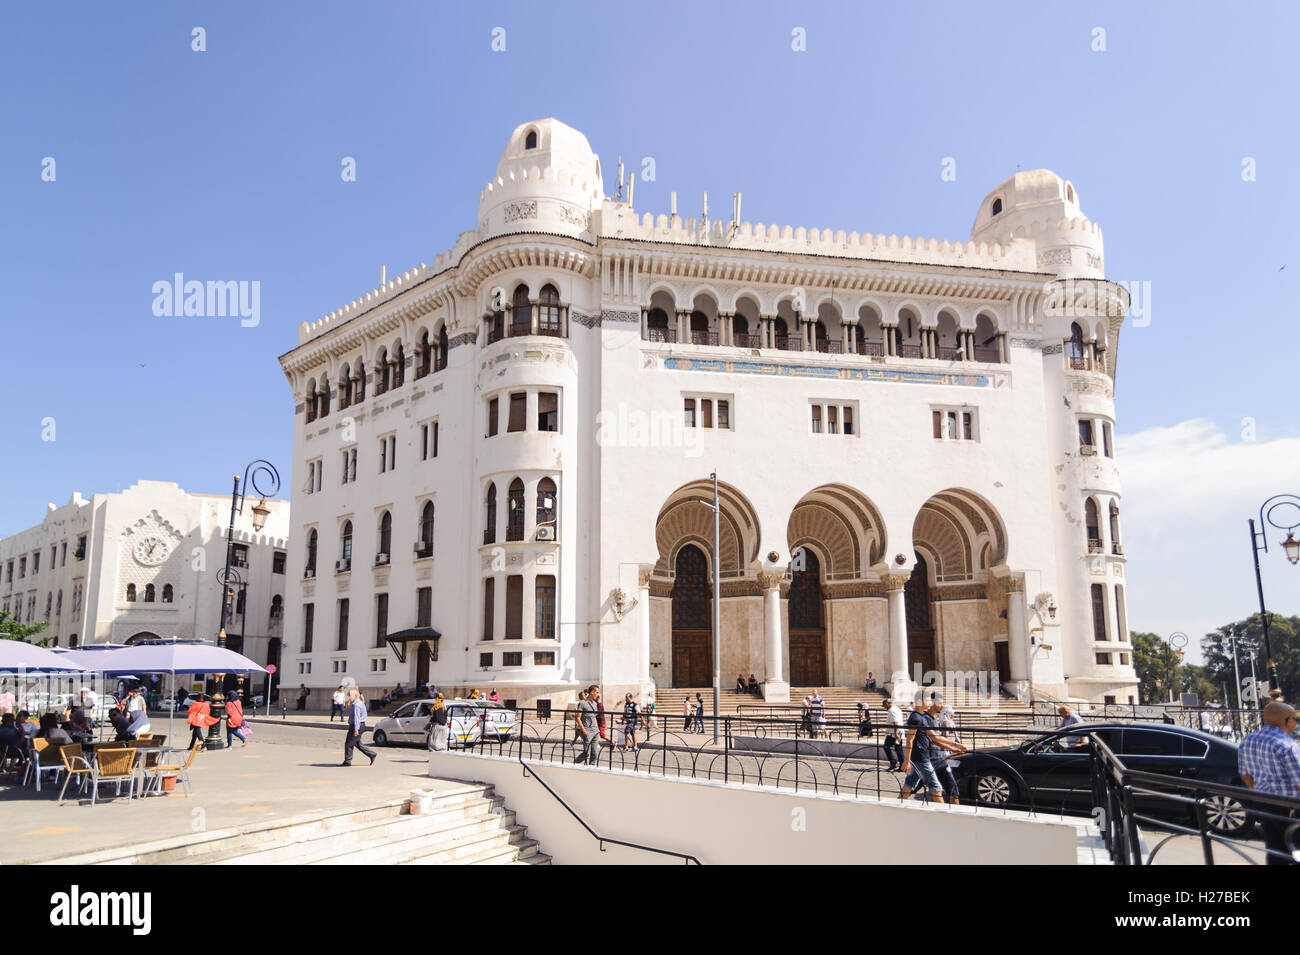 La Grande Poste Alger est un bâtiment de style néo-mauresque Arabisance construit à Alger en 1910 Banque D'Images